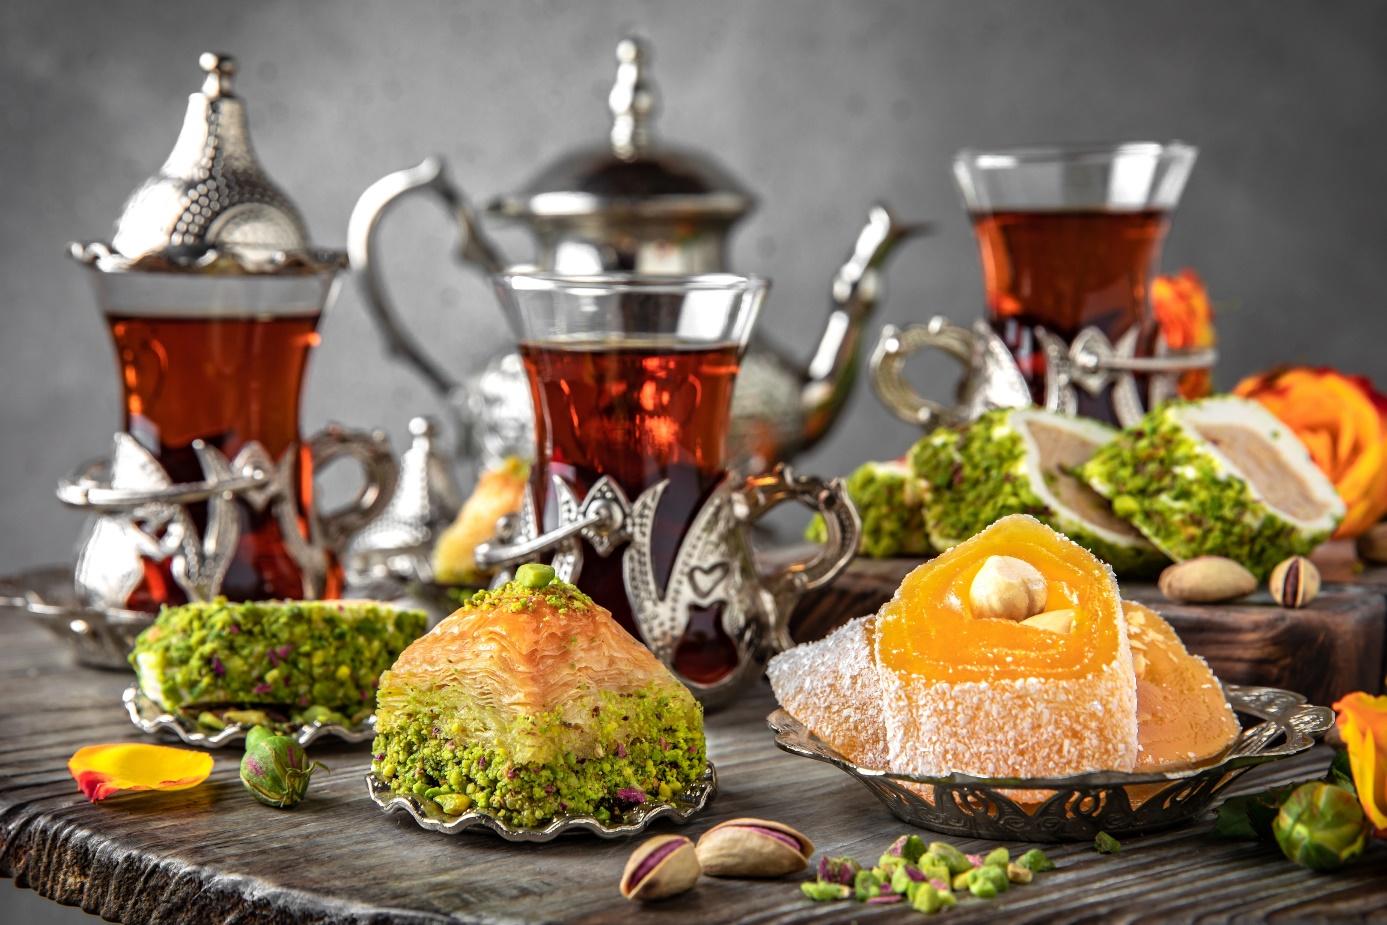 Egipskie słodycze, herbata z Egiptu, arabskie słodycze, szklanki z herbatą, Egipt na talerzu